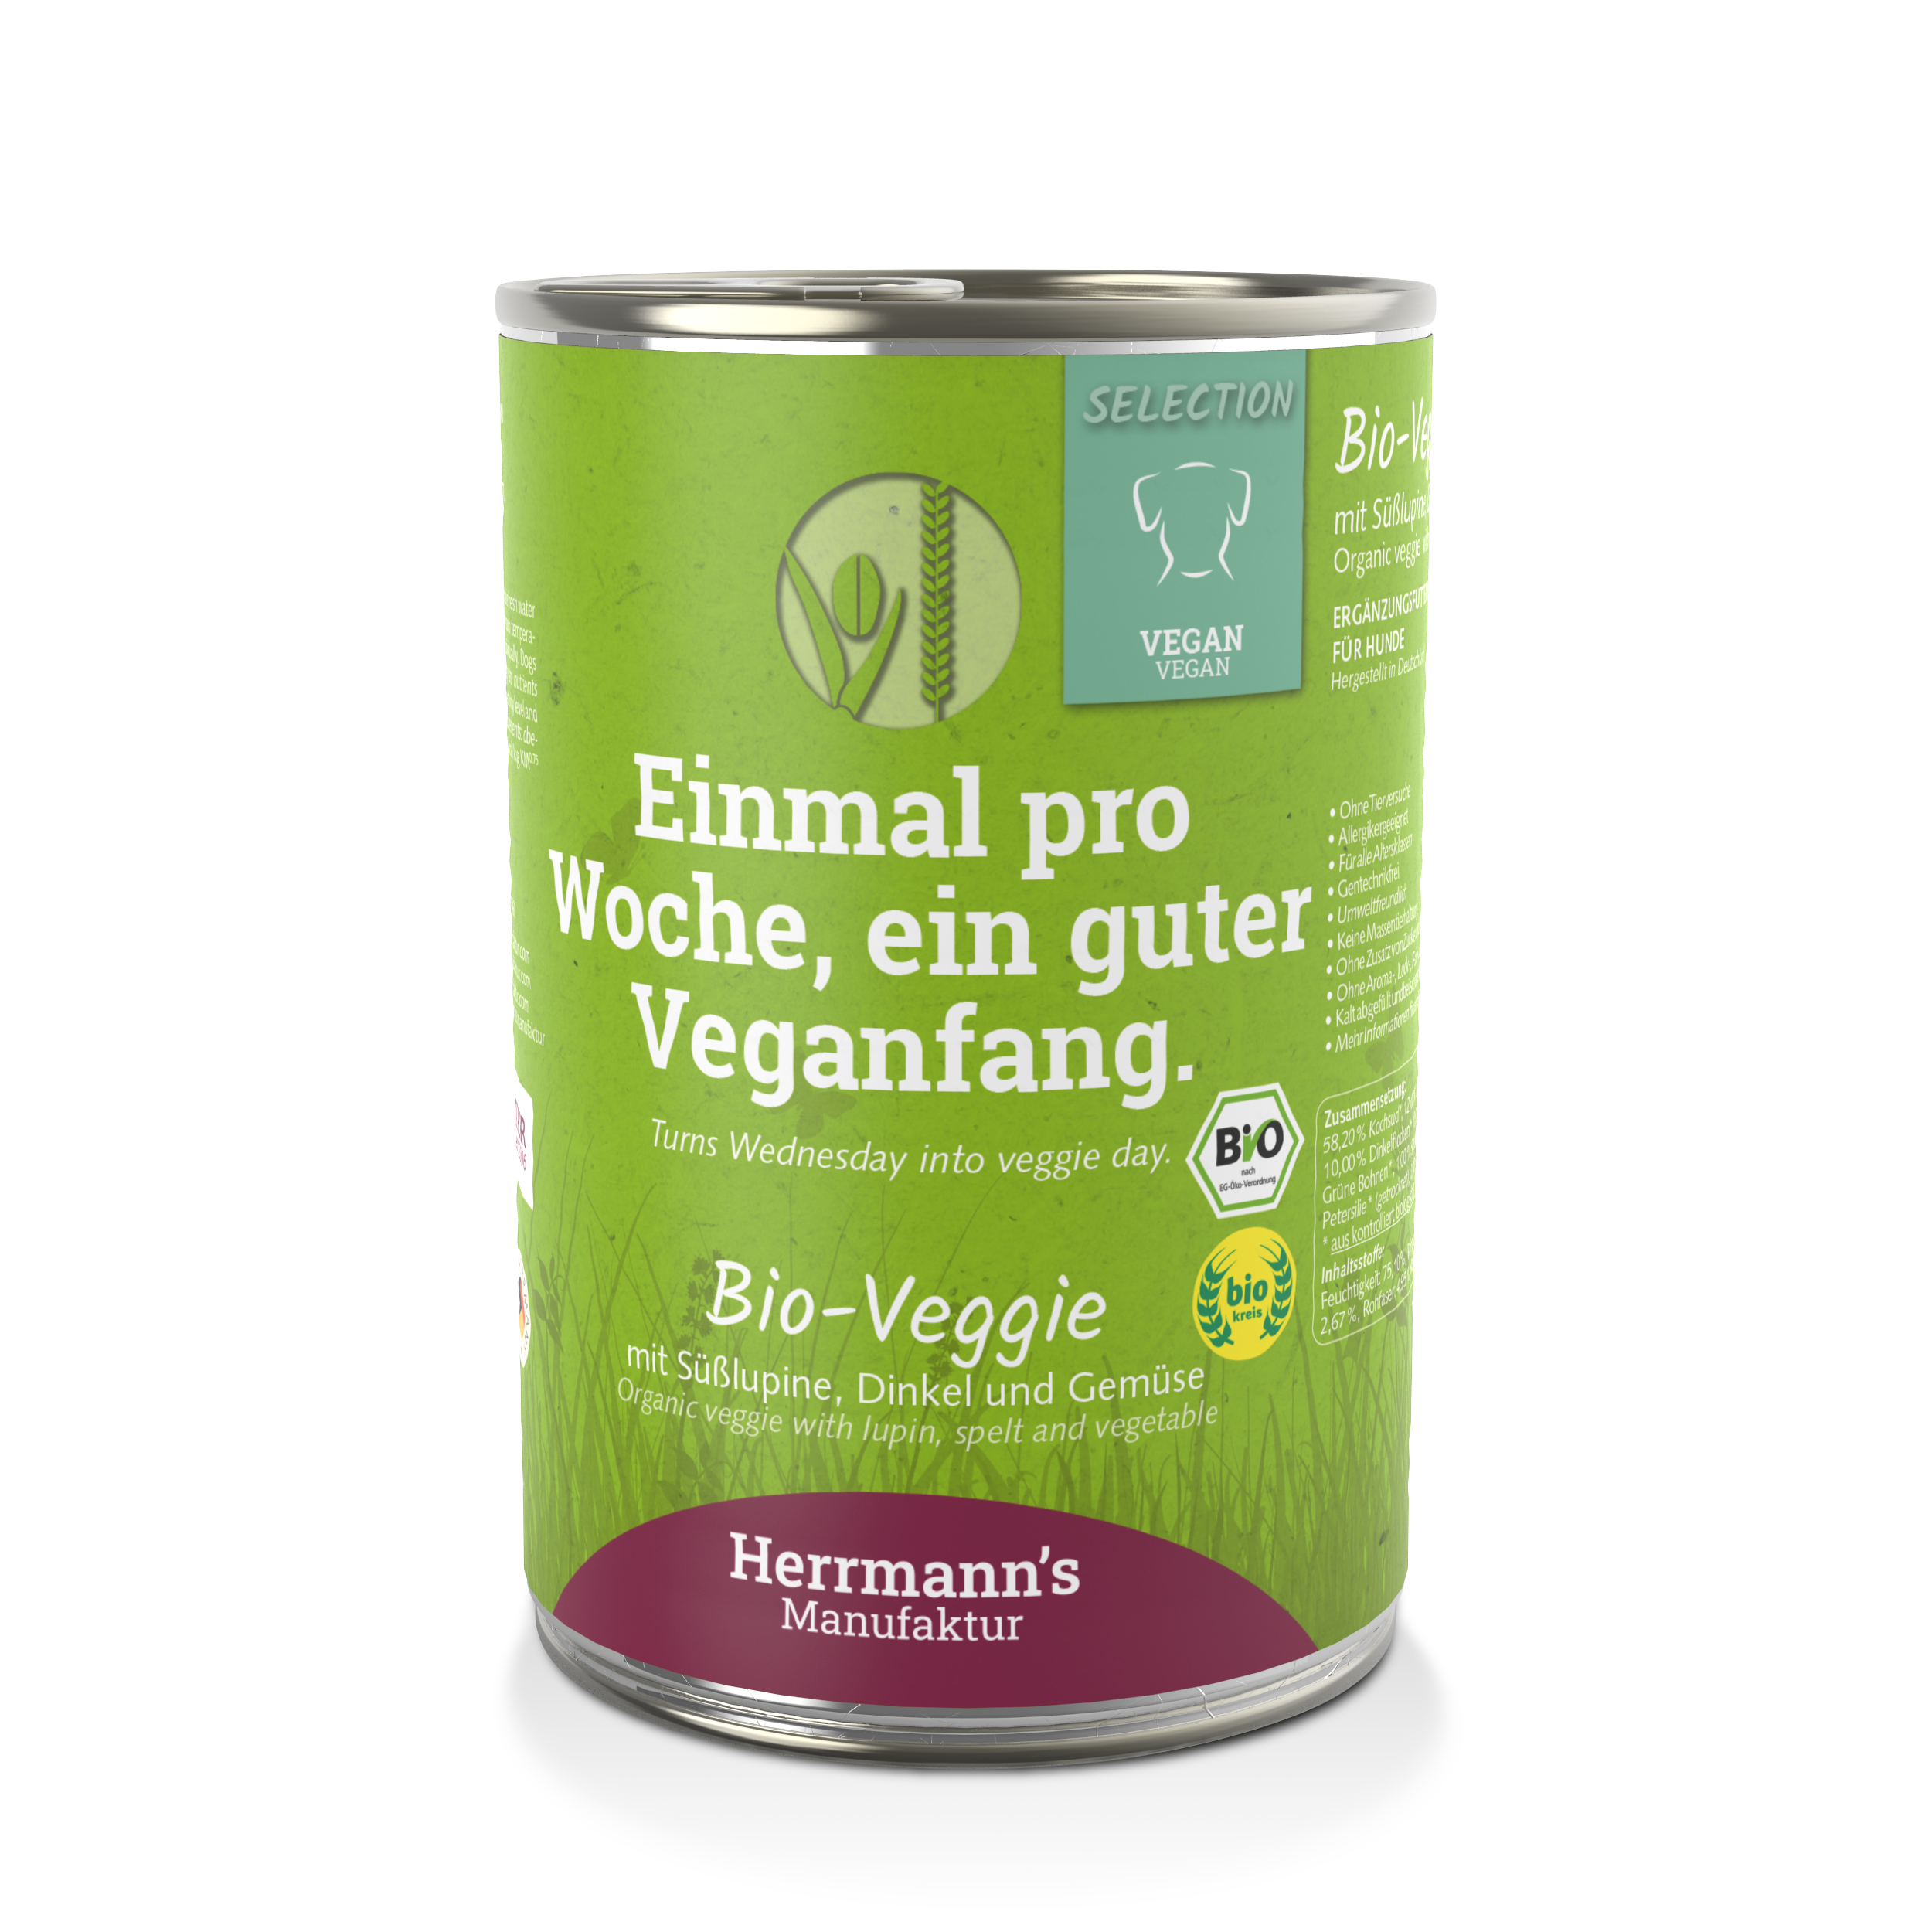 Herrmann's Selection Vegan Bio Veggie mit weißer Süßlupine 400g